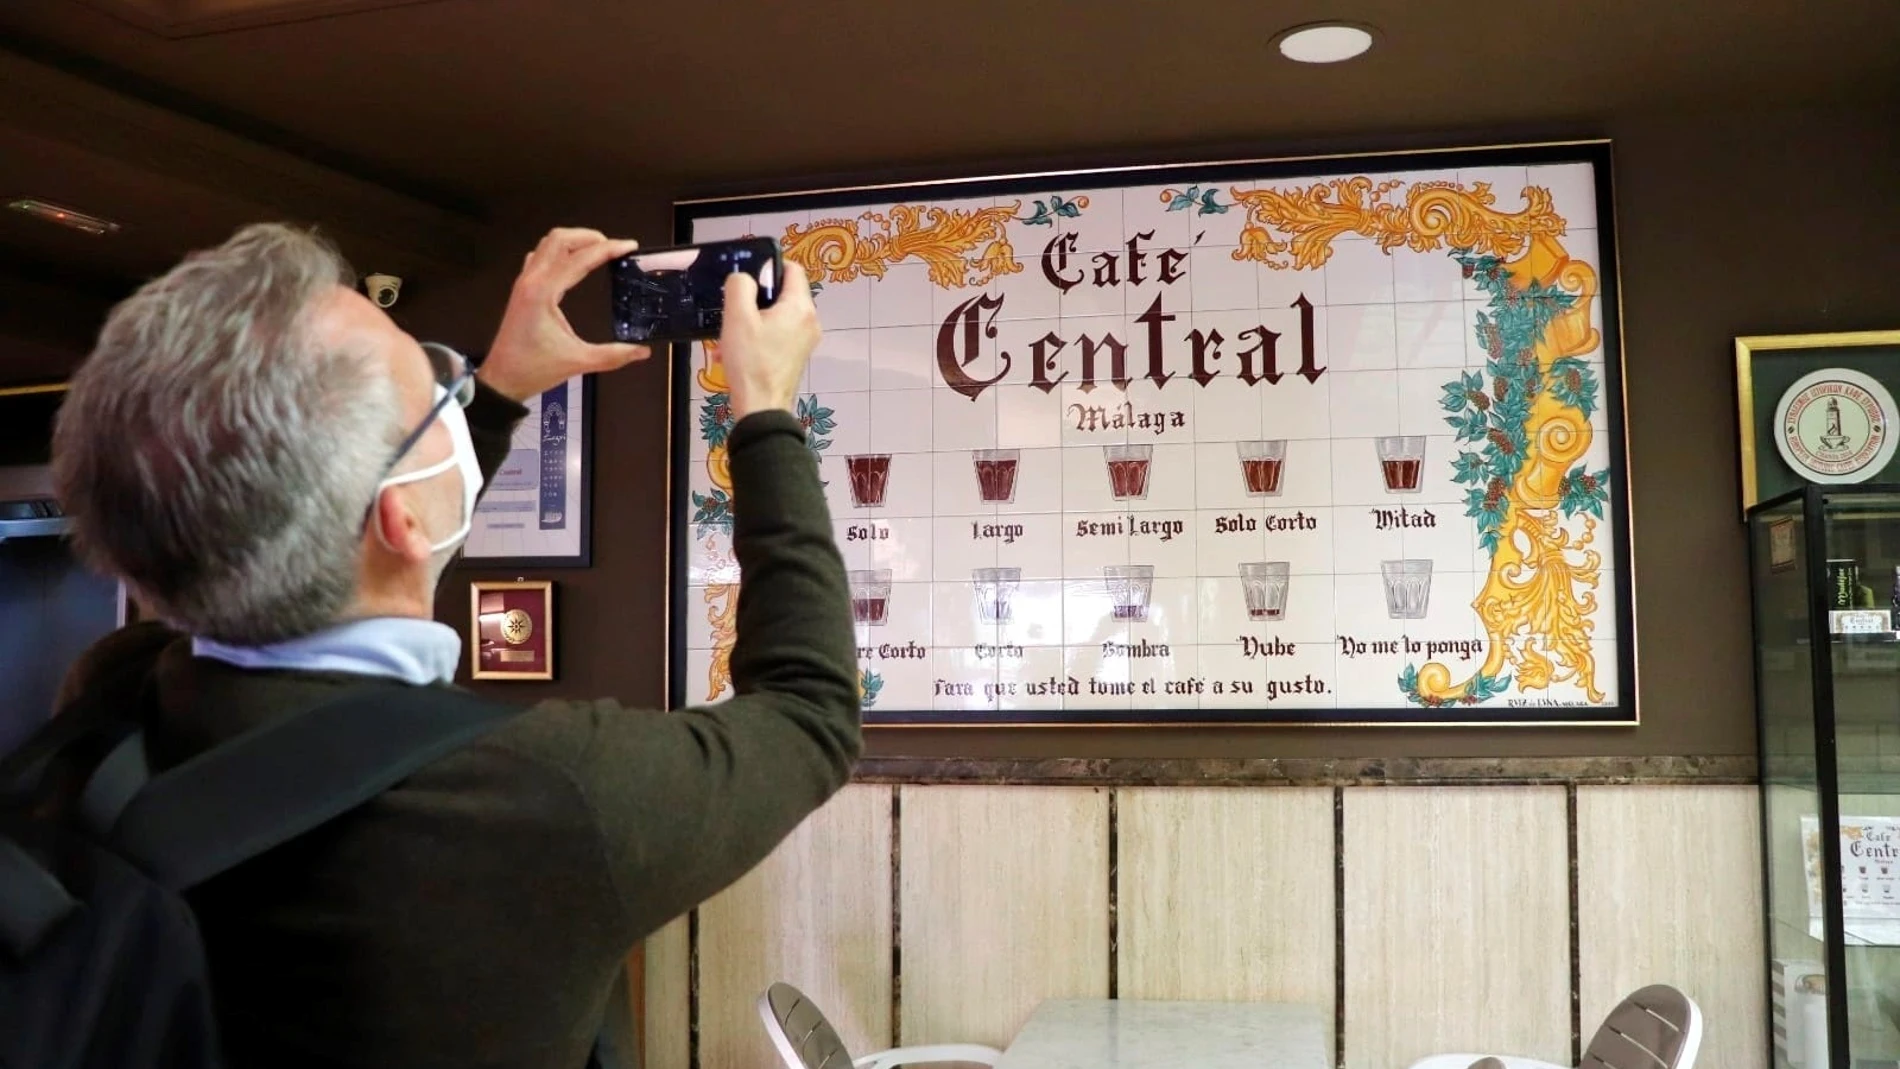 Un turista fotografía el emblemático cartel de Café Central, histórico bar que inventó unos peculiares nombres para pedir esta cotidiana y popular bebida en sus diversas formas. EFE/Daniel Luque